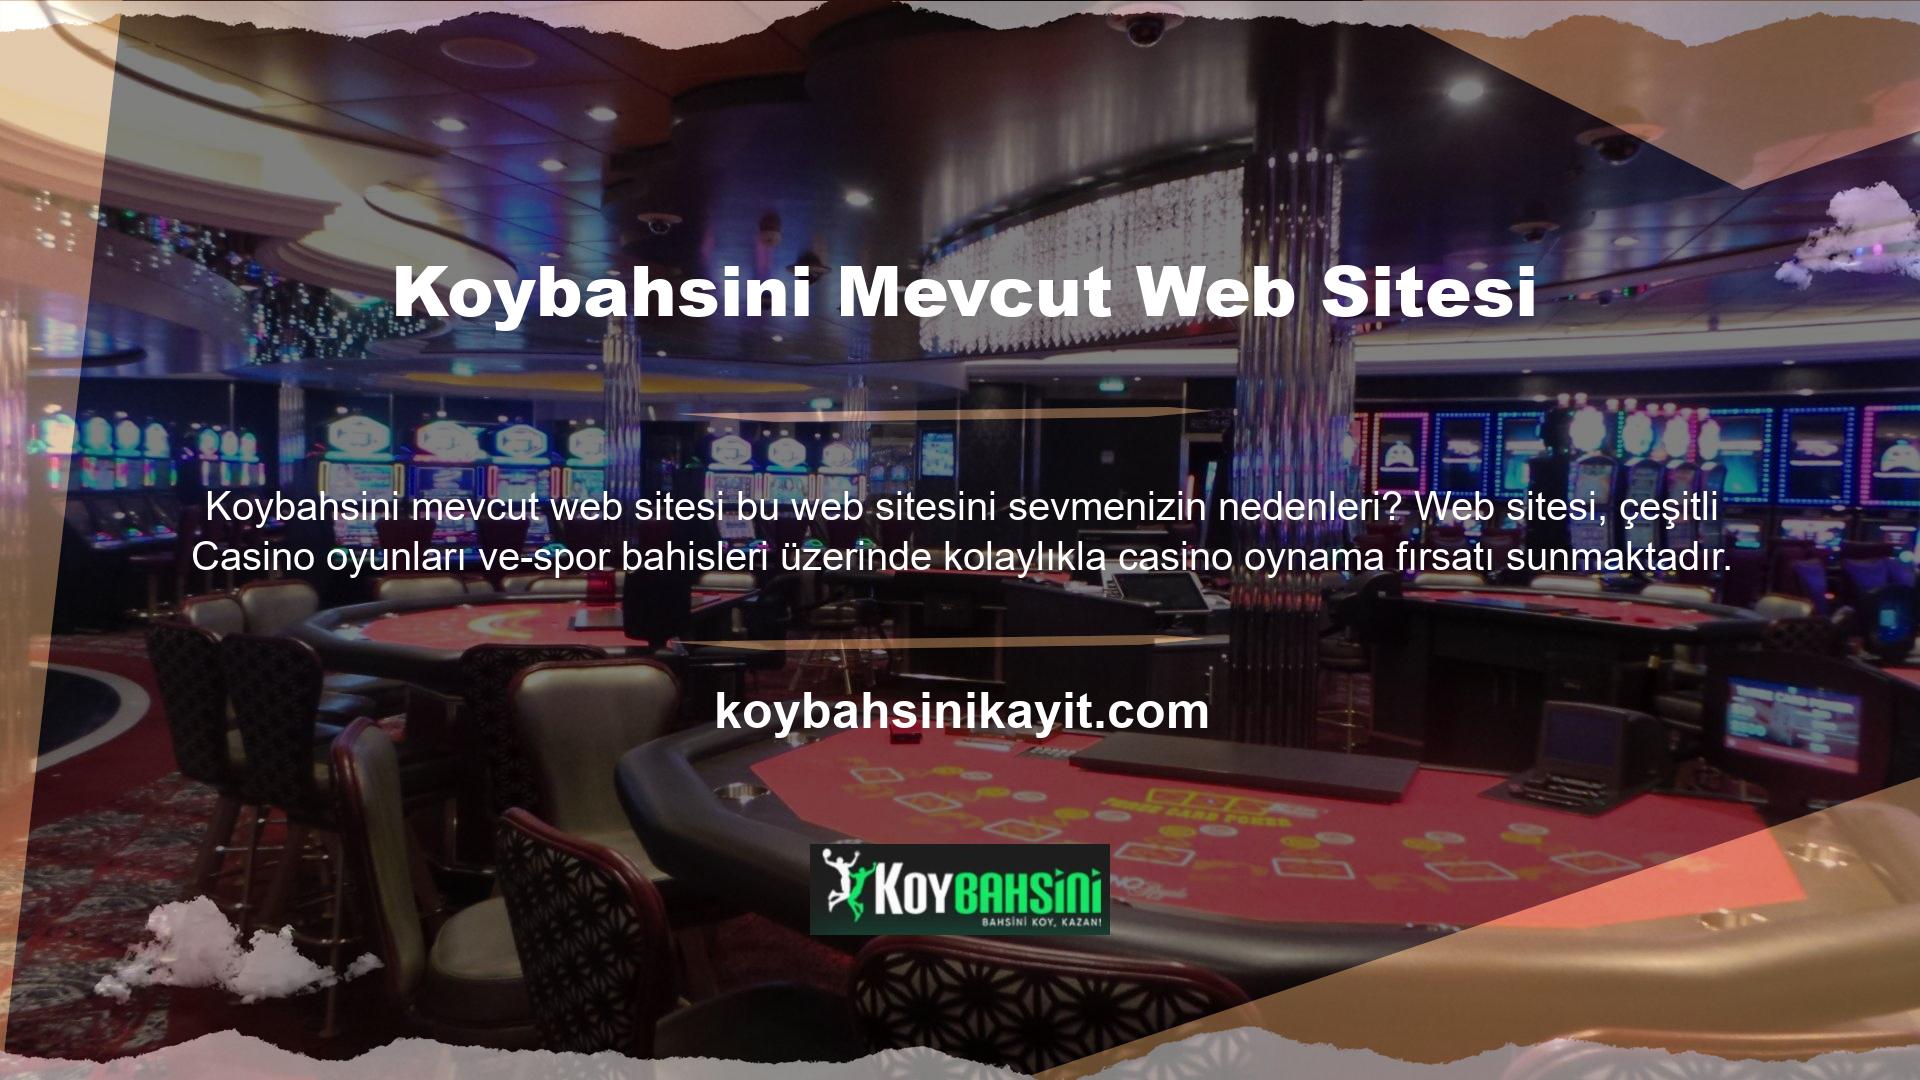 Koybahsini yeni adresi web sitesi, eğlenmeniz için çok çeşitli Casino oyunları ve slot makineleri sunuyor